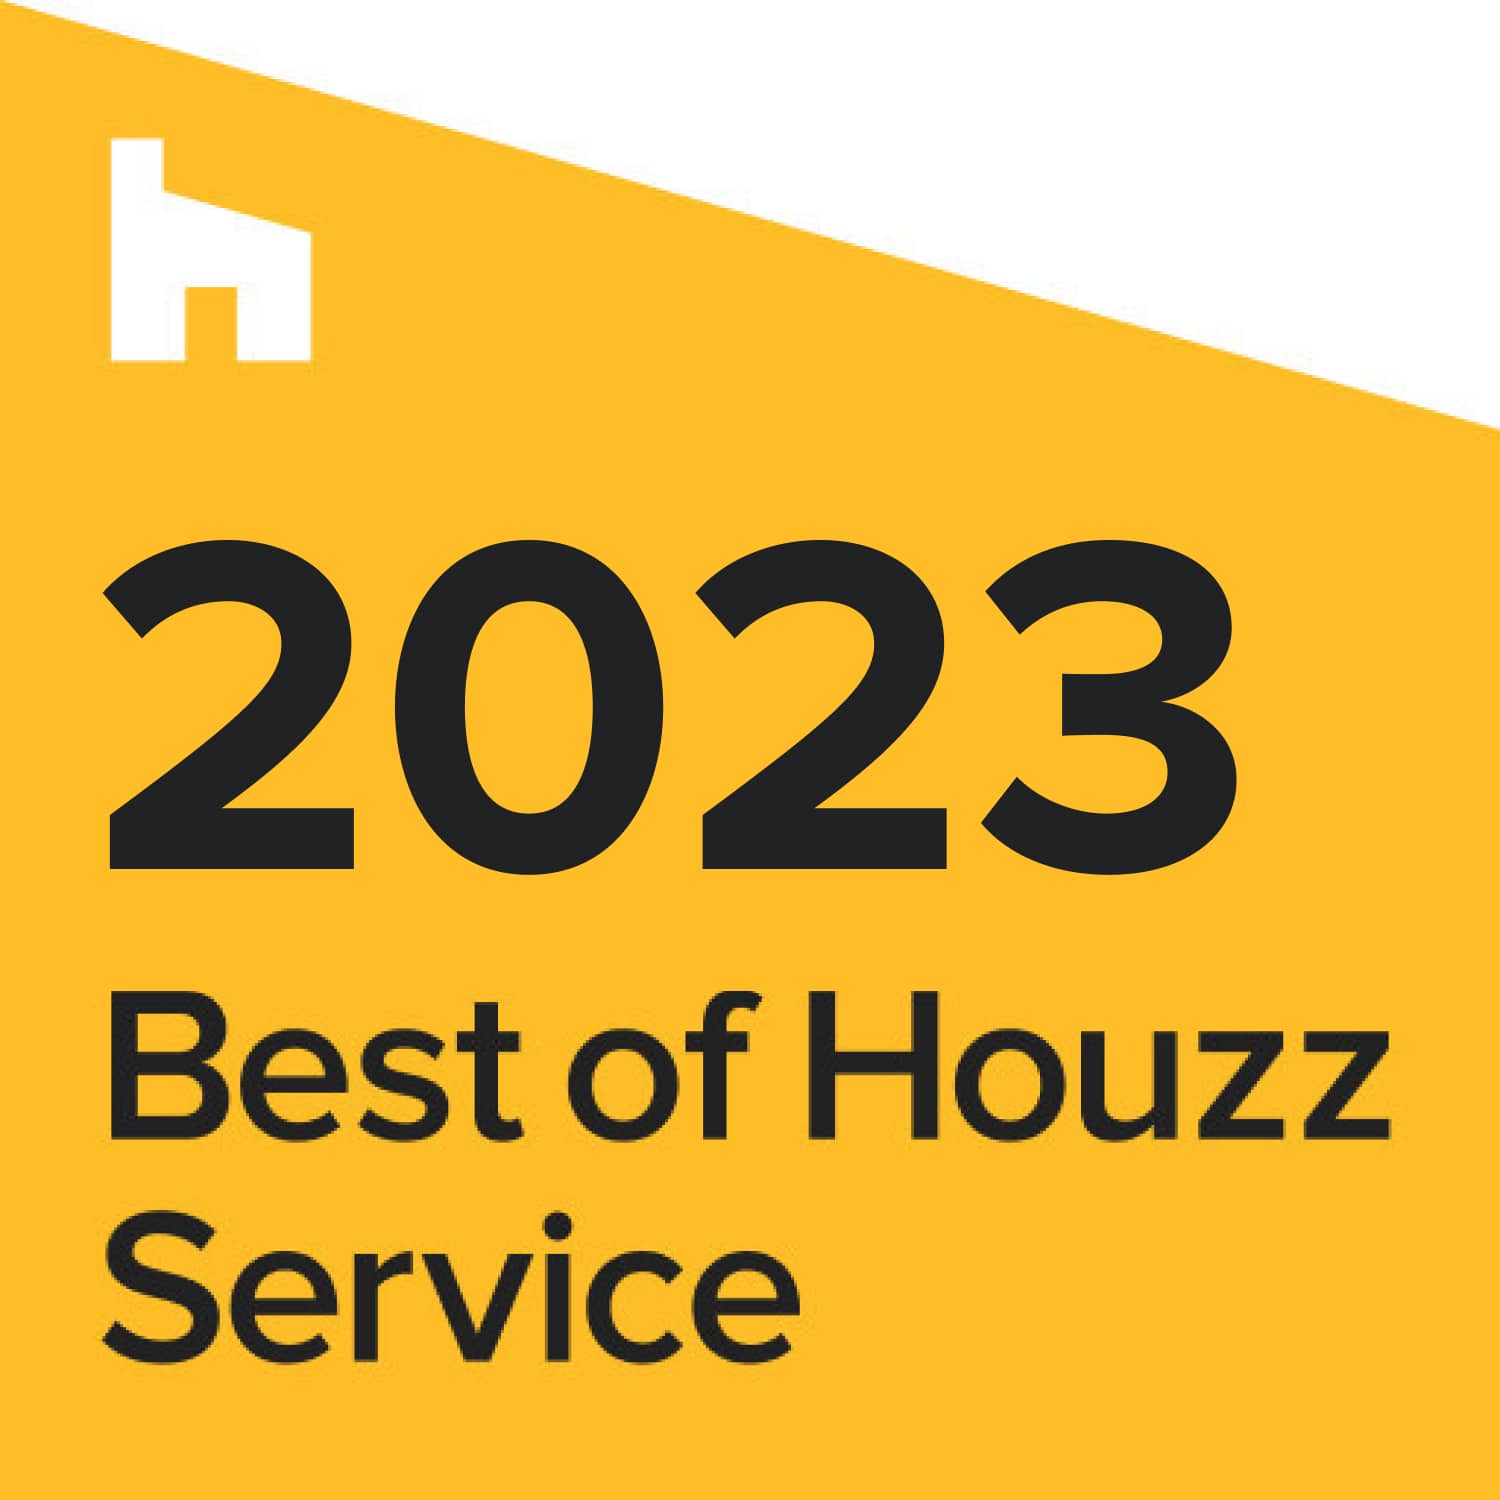 2023 best of houzz interior design service.